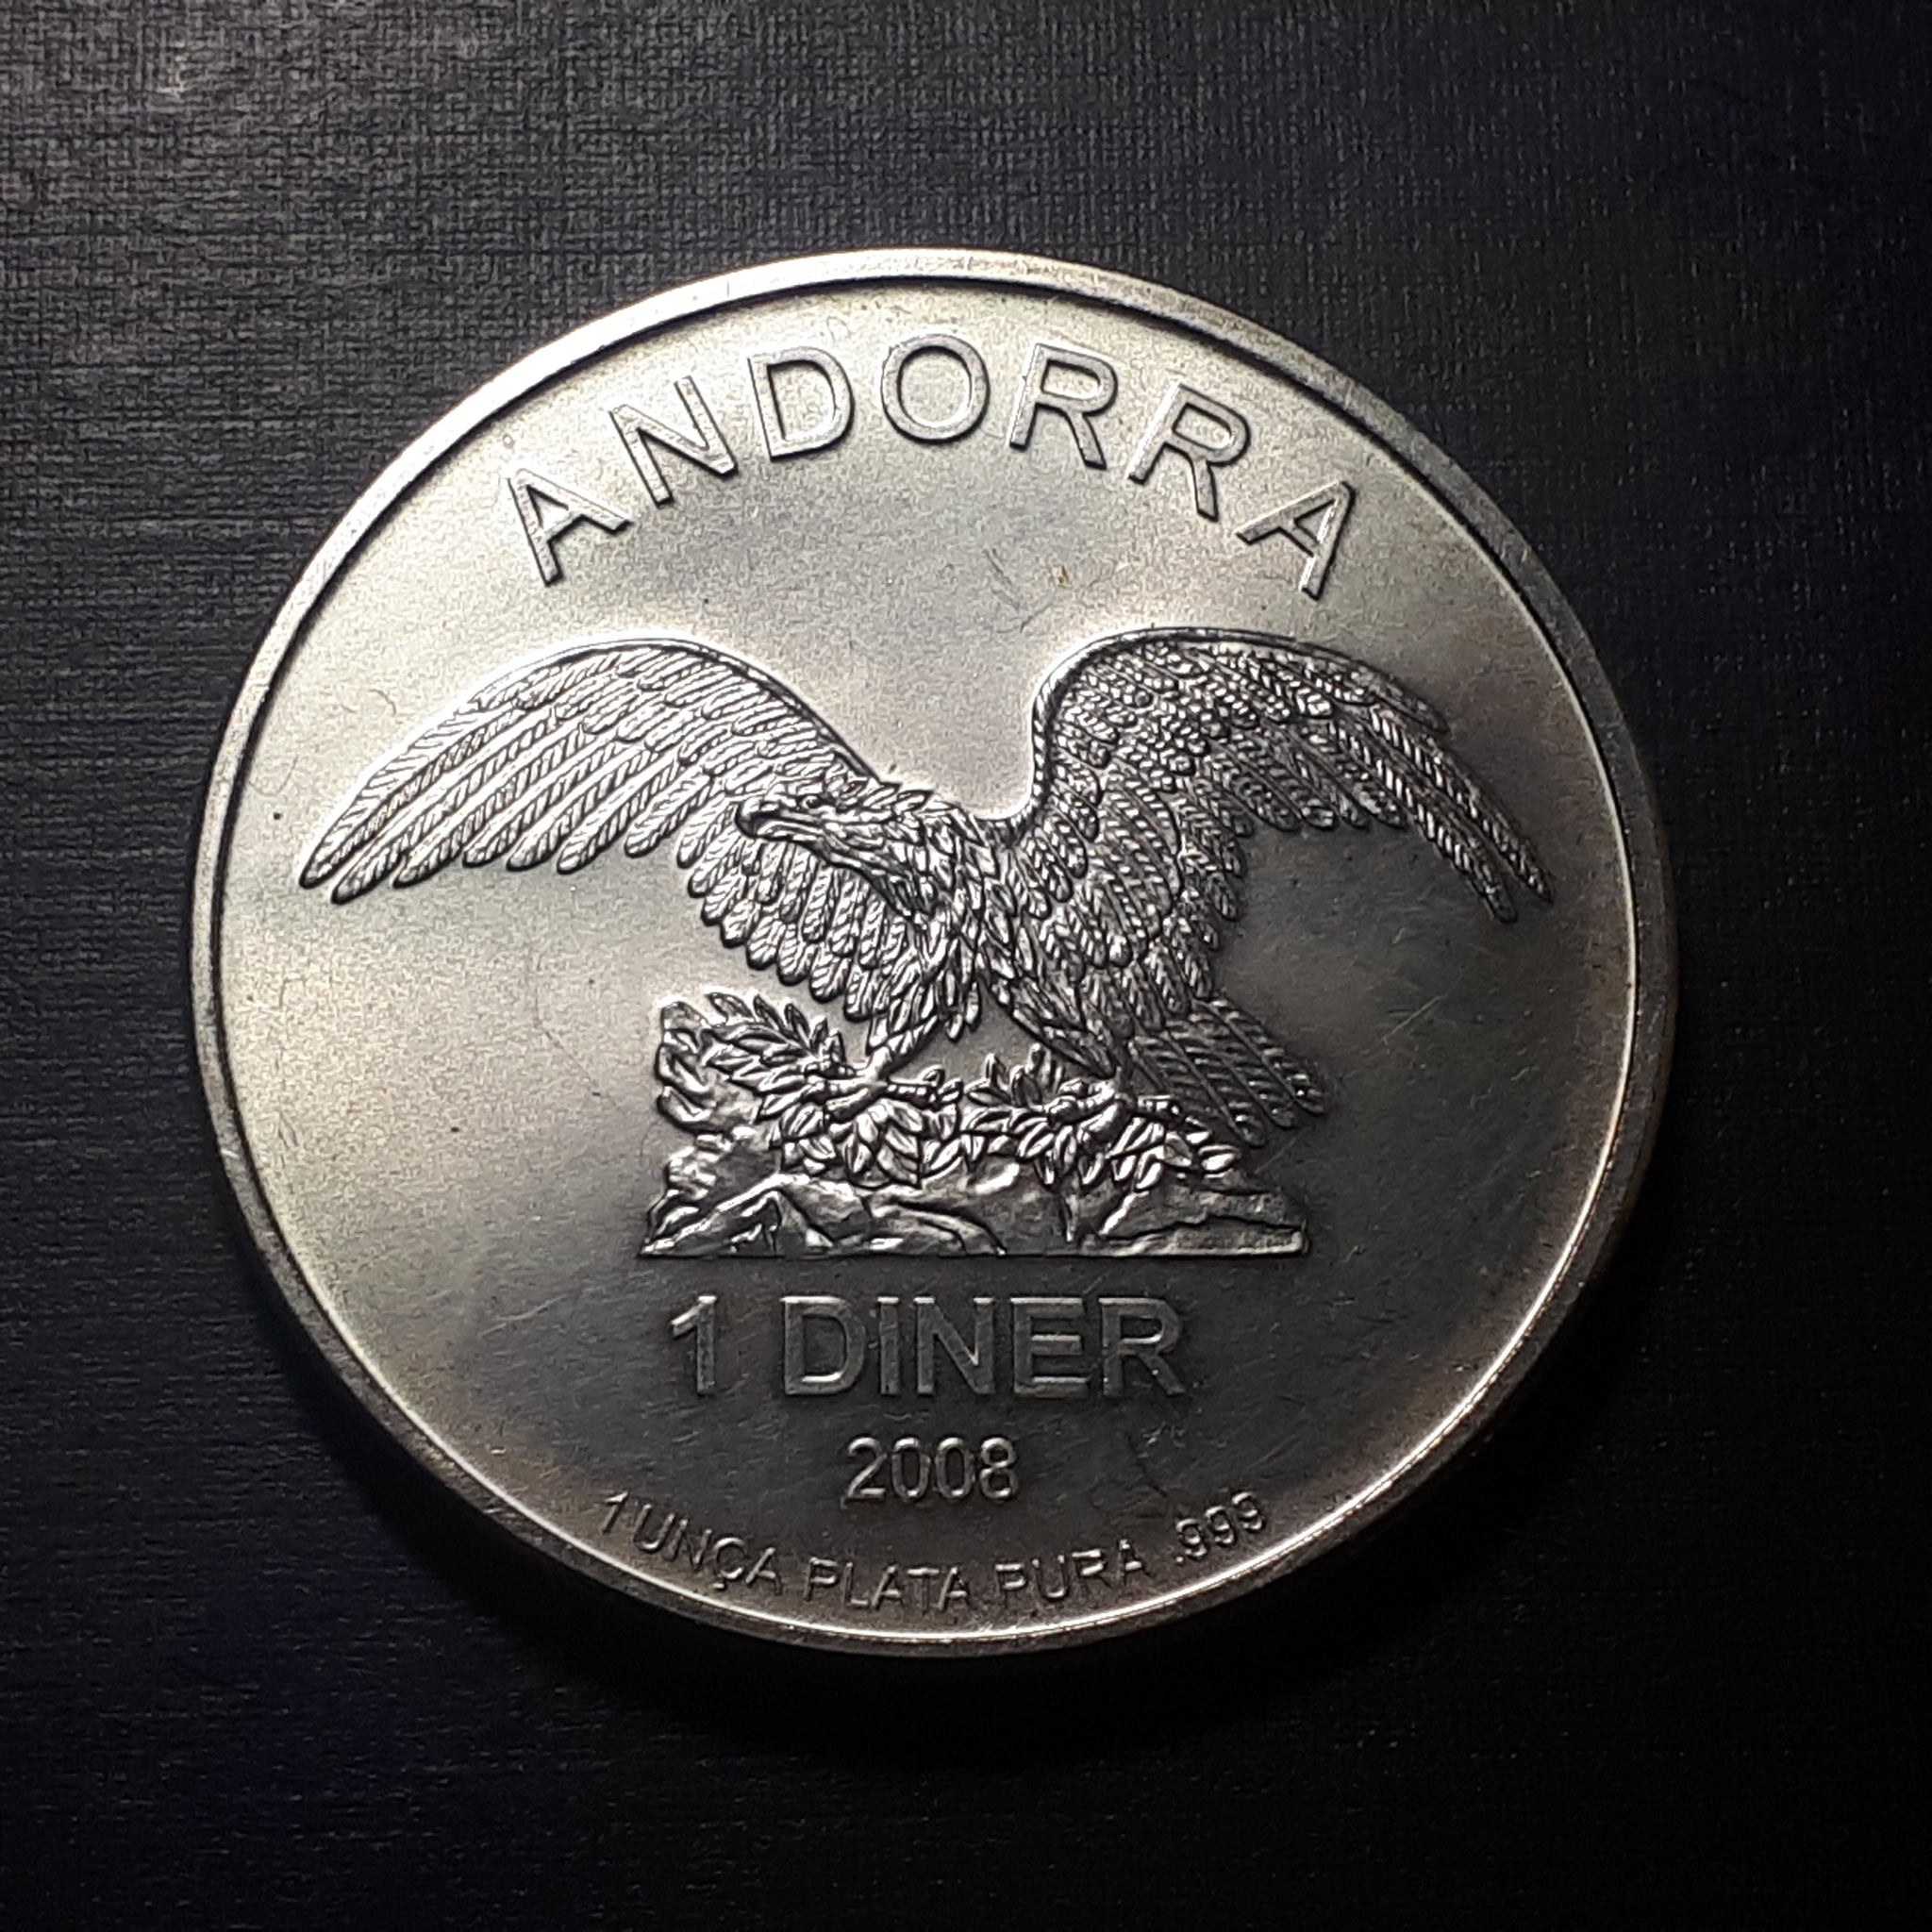 Andorra one diner 1 oz .999  silver round 2008